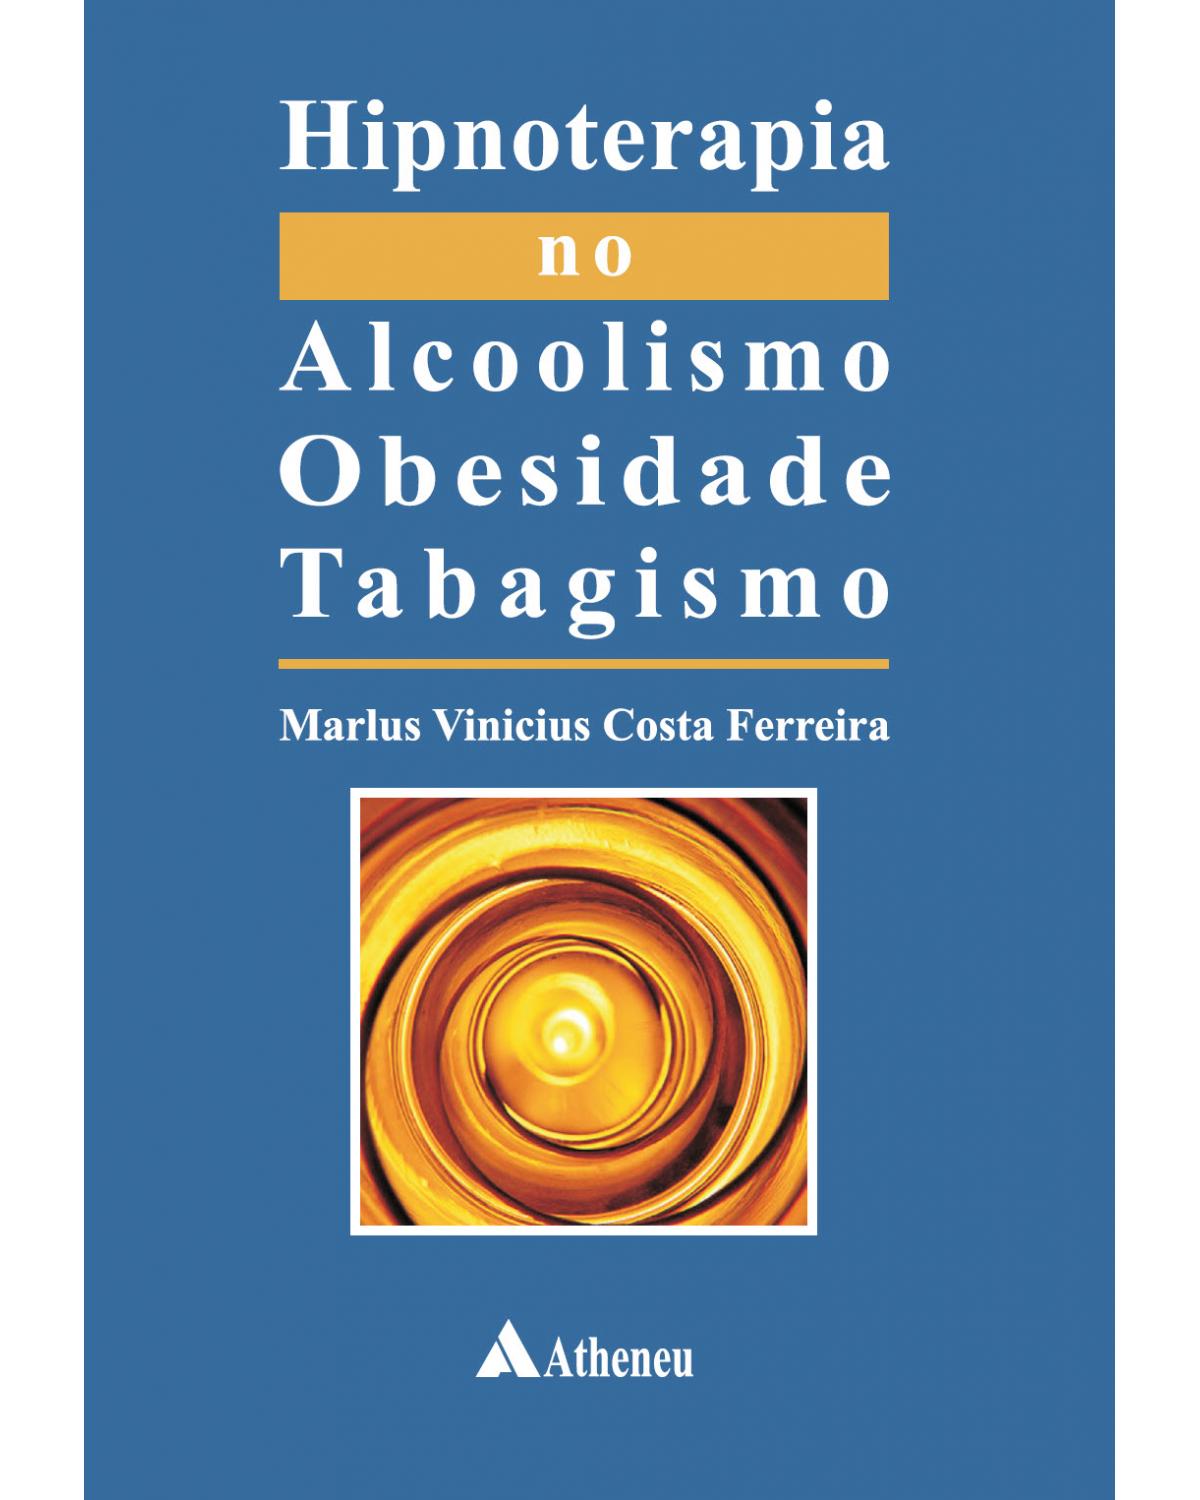 Hipnoterapia no alcoolismo, obesidade, tabagismo - 1ª Edição | 2010